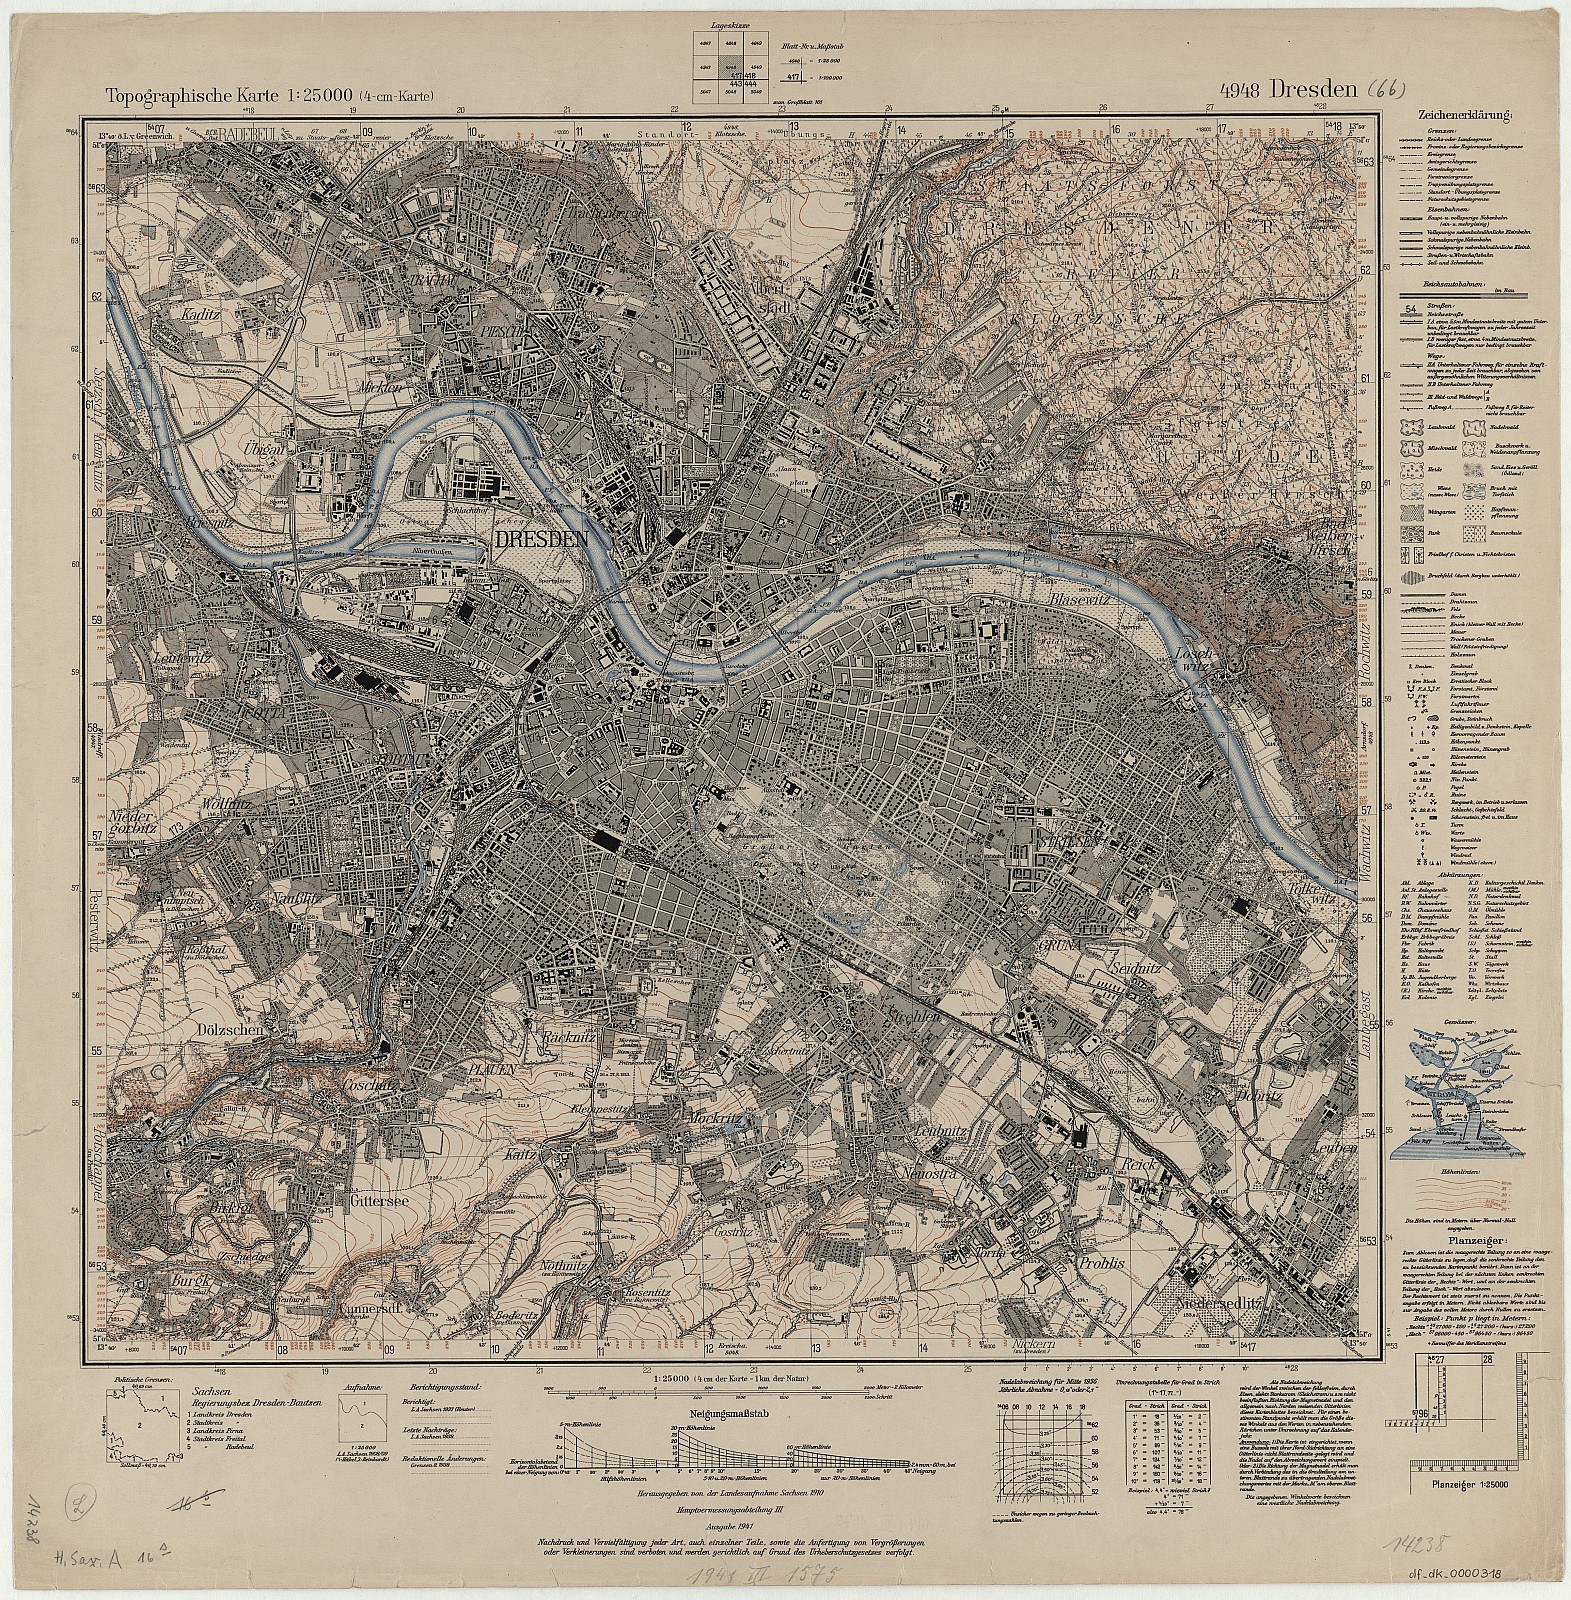 Section Dresden aus: Topographische Karte (Meßtischblätter) Sachsen